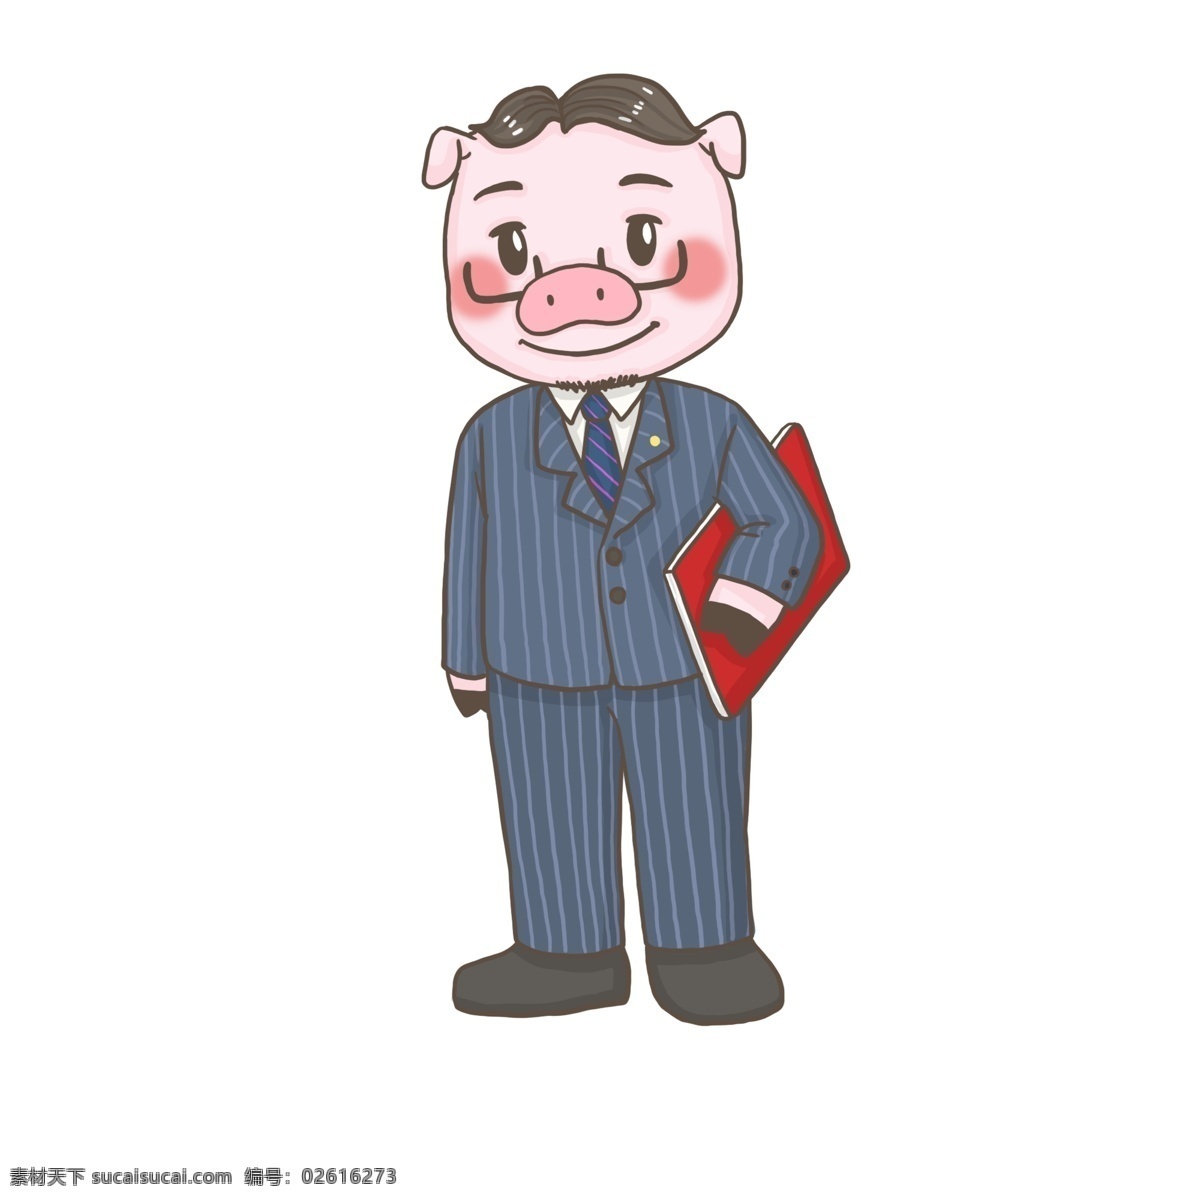 白领 精英 工作 猪 猪年 新年新气象 新年快乐 企划书 西装领带 2019新年 猪猪形象拓展 职场猪猪 白领猪猪